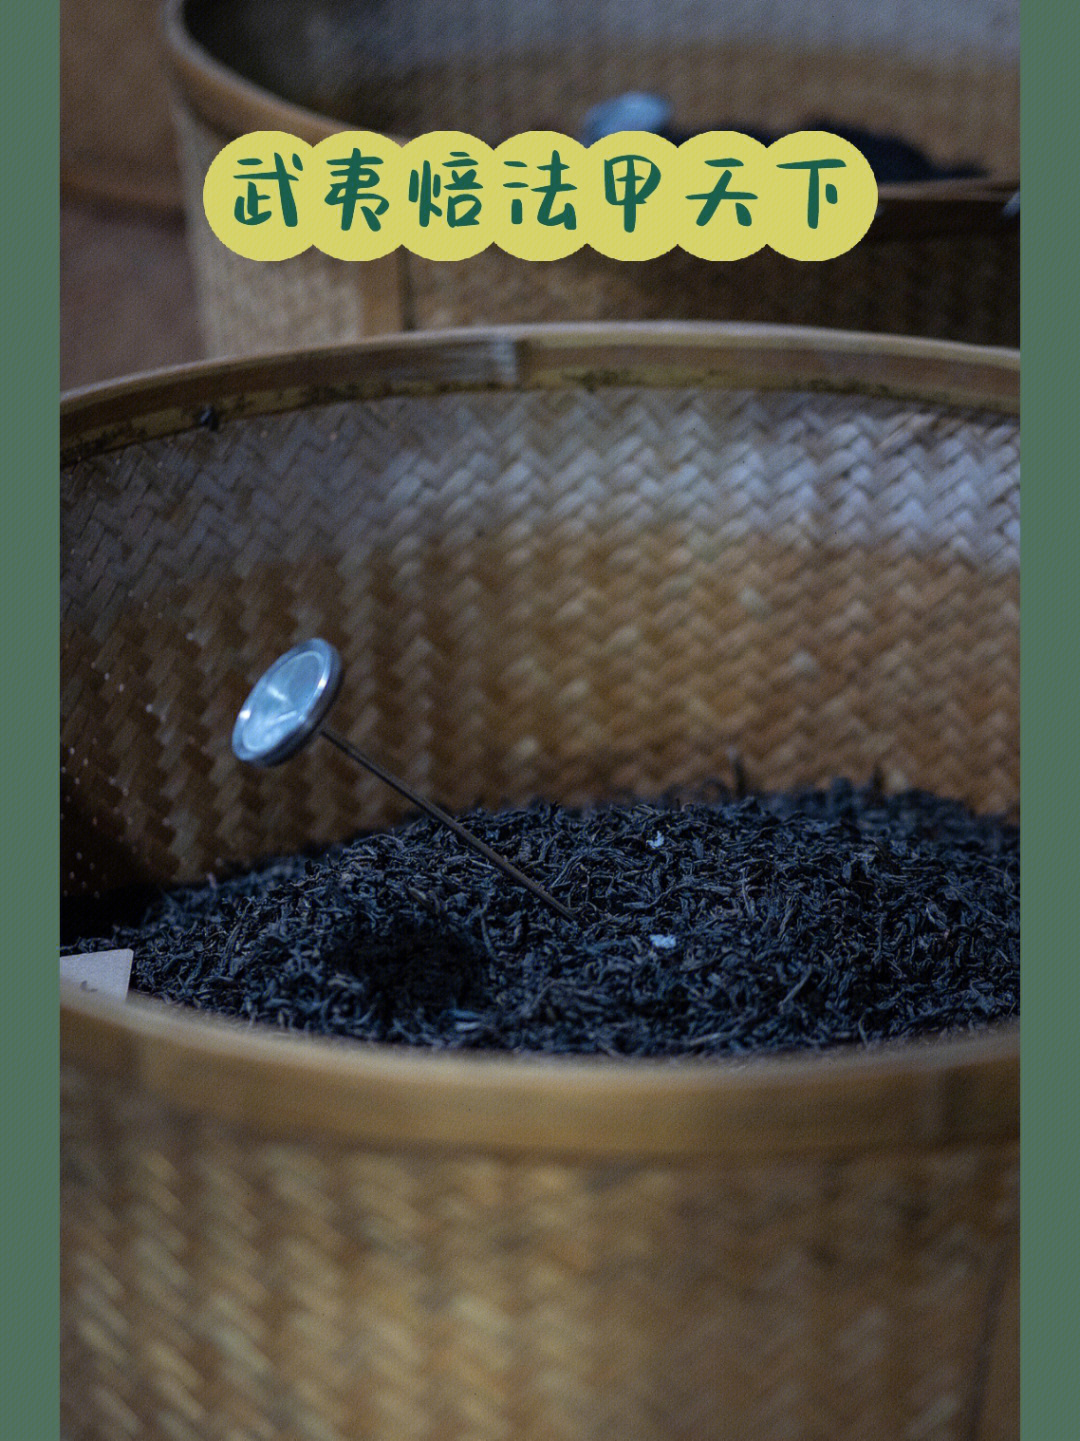 茶碱甲基化工艺的详细图片